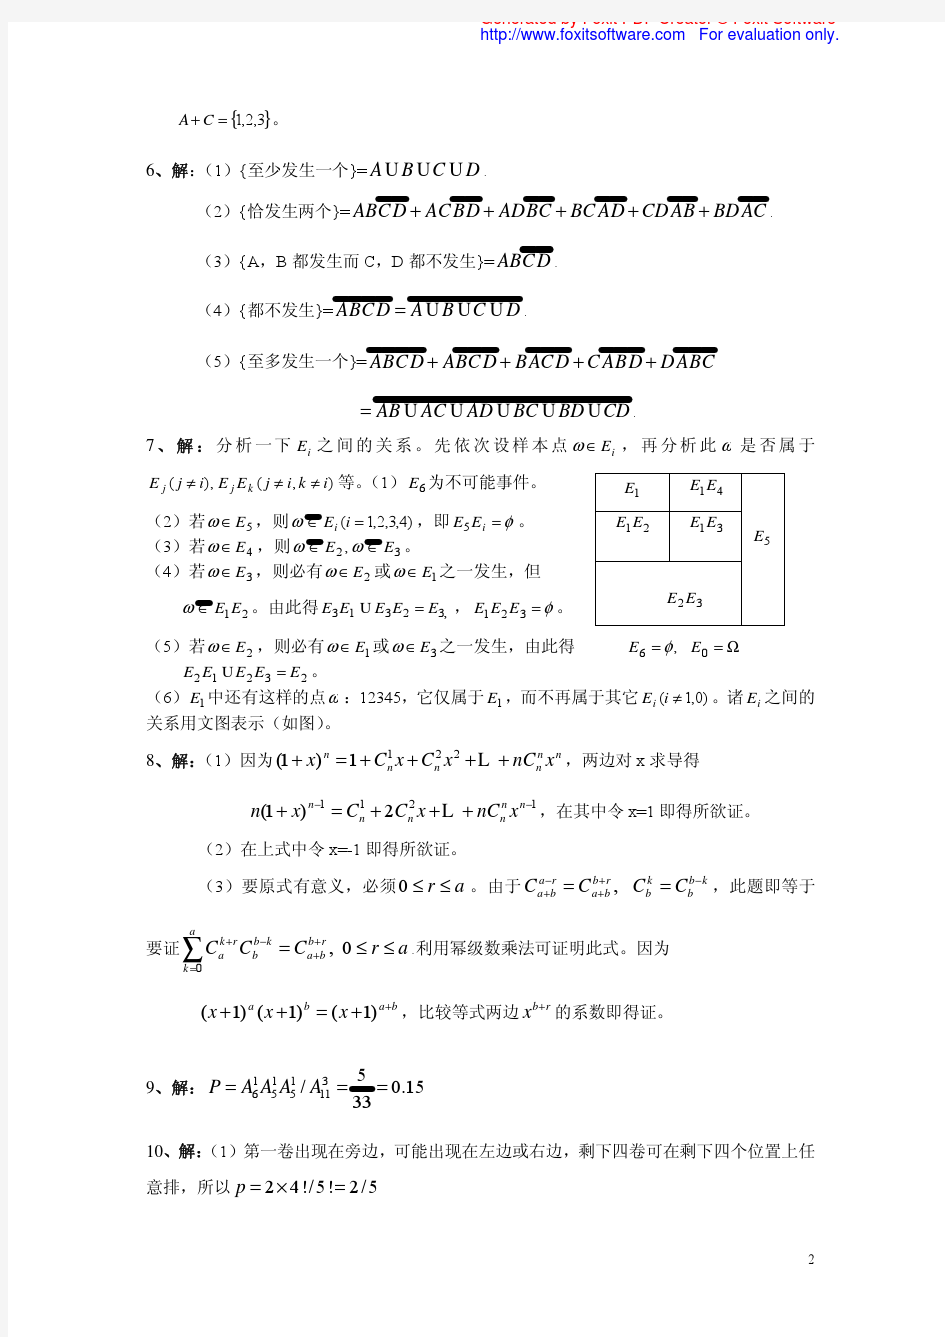 李贤平 第2版《概率论基础》第一章答案